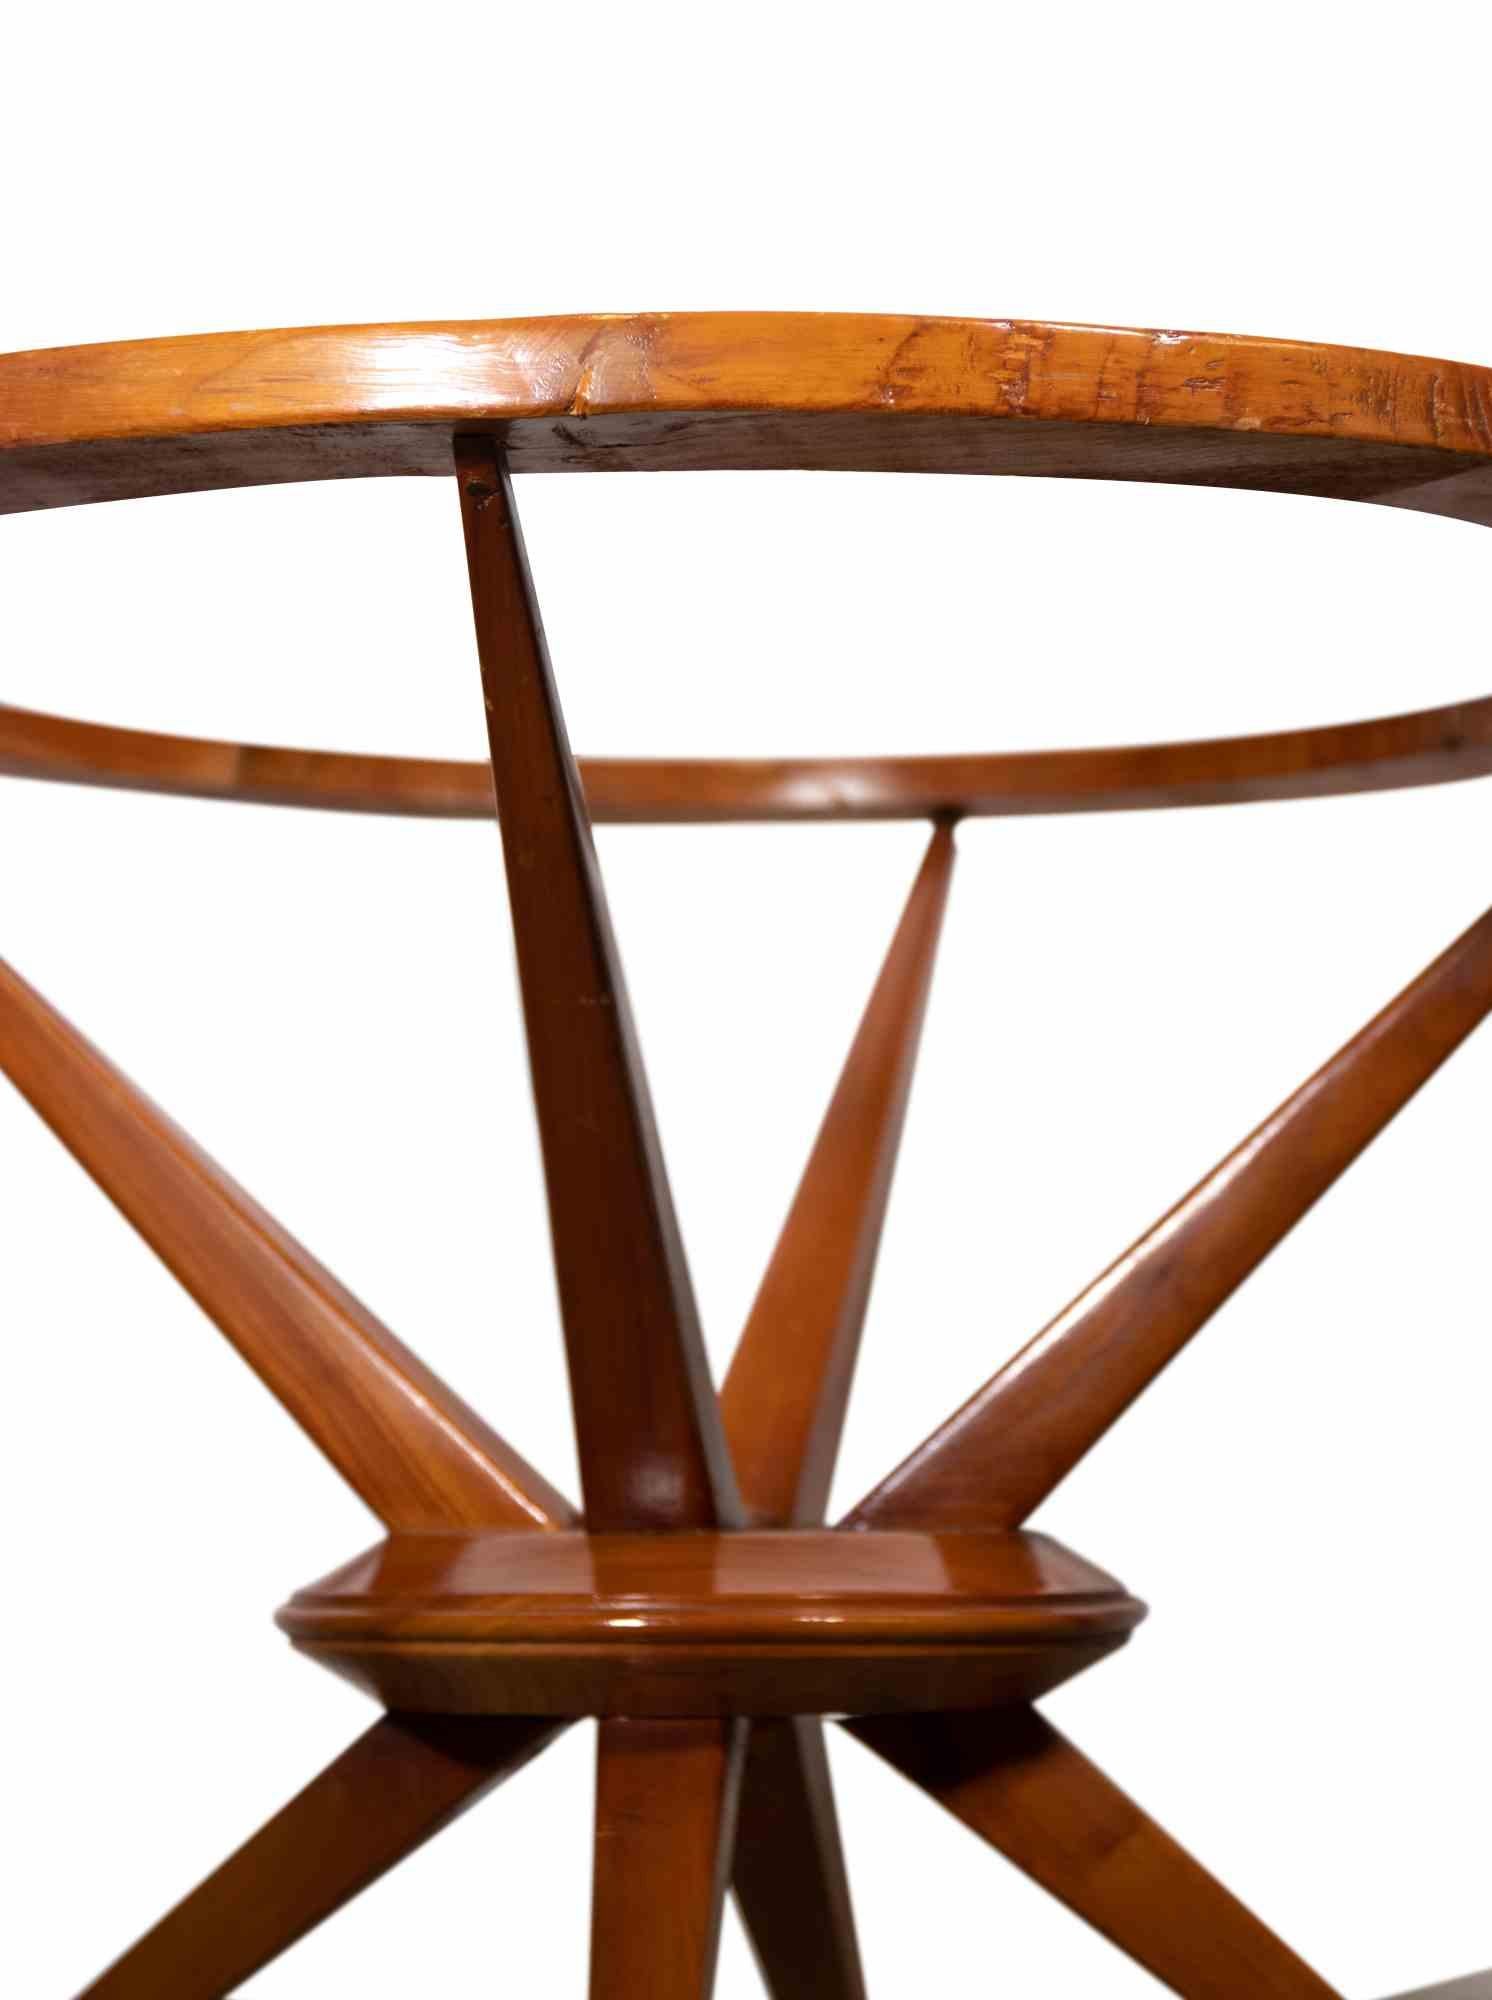 Der Couchtisch ist ein Originaldesign-Möbel von Cesare Lacca aus der Mitte des 20. Jahrhunderts.

Schöner kleiner Tisch, italienisches Design in Holz und Glasplatte.

Der 1929 in Neapel geborene italienische Architekt und Designer Cesare Lacca